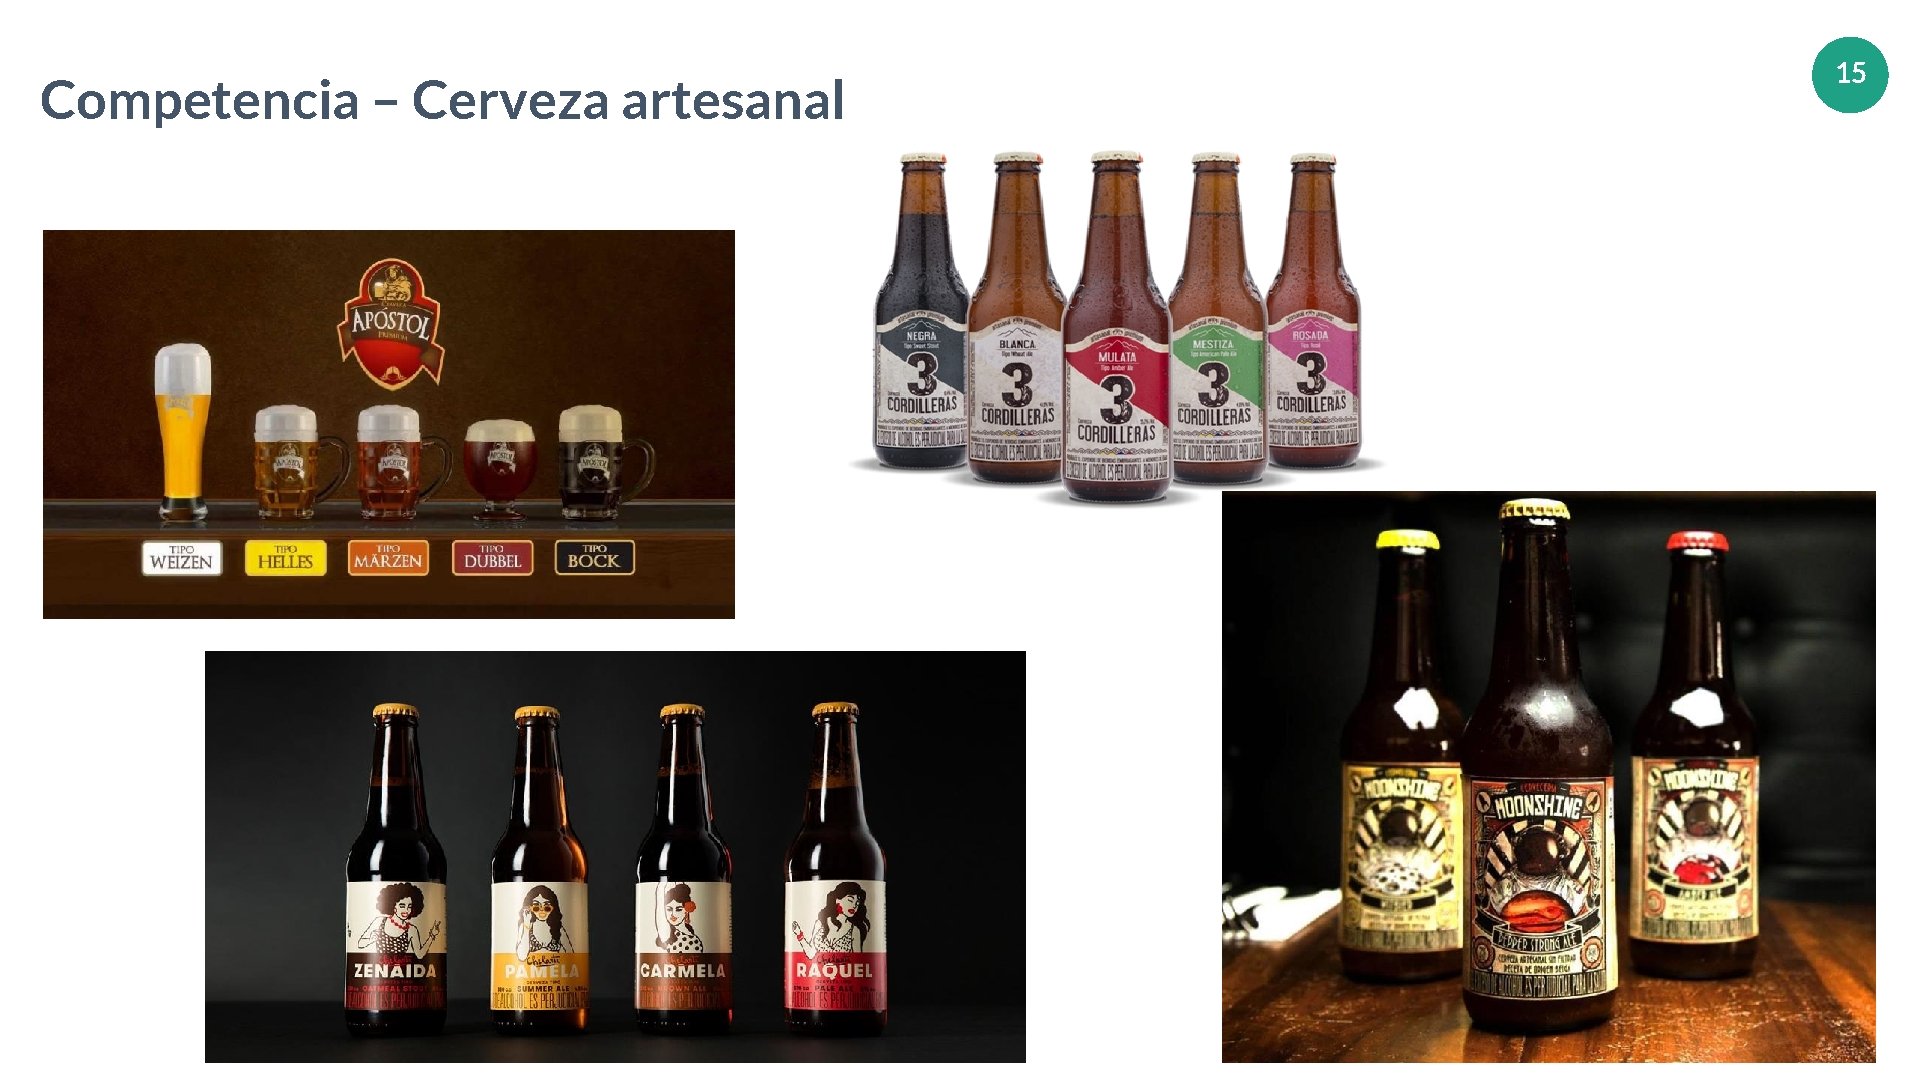 Competencia – Cerveza artesanal www. companyname. com © 2016 Jetfabrik Multipurpose Theme. All Rights